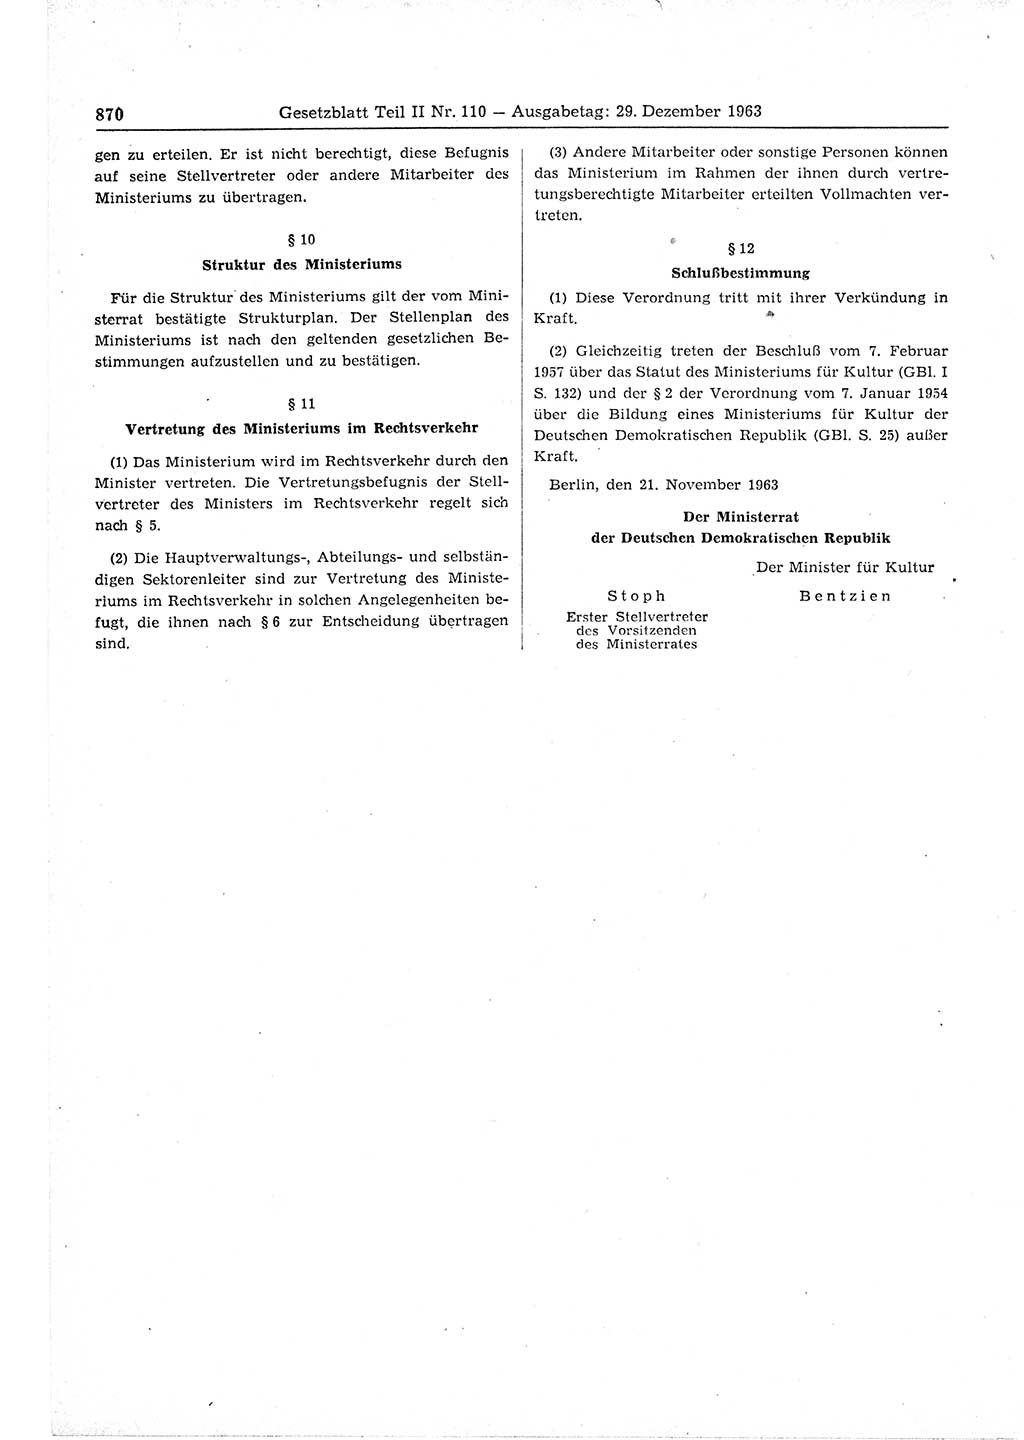 Gesetzblatt (GBl.) der Deutschen Demokratischen Republik (DDR) Teil ⅠⅠ 1963, Seite 870 (GBl. DDR ⅠⅠ 1963, S. 870)